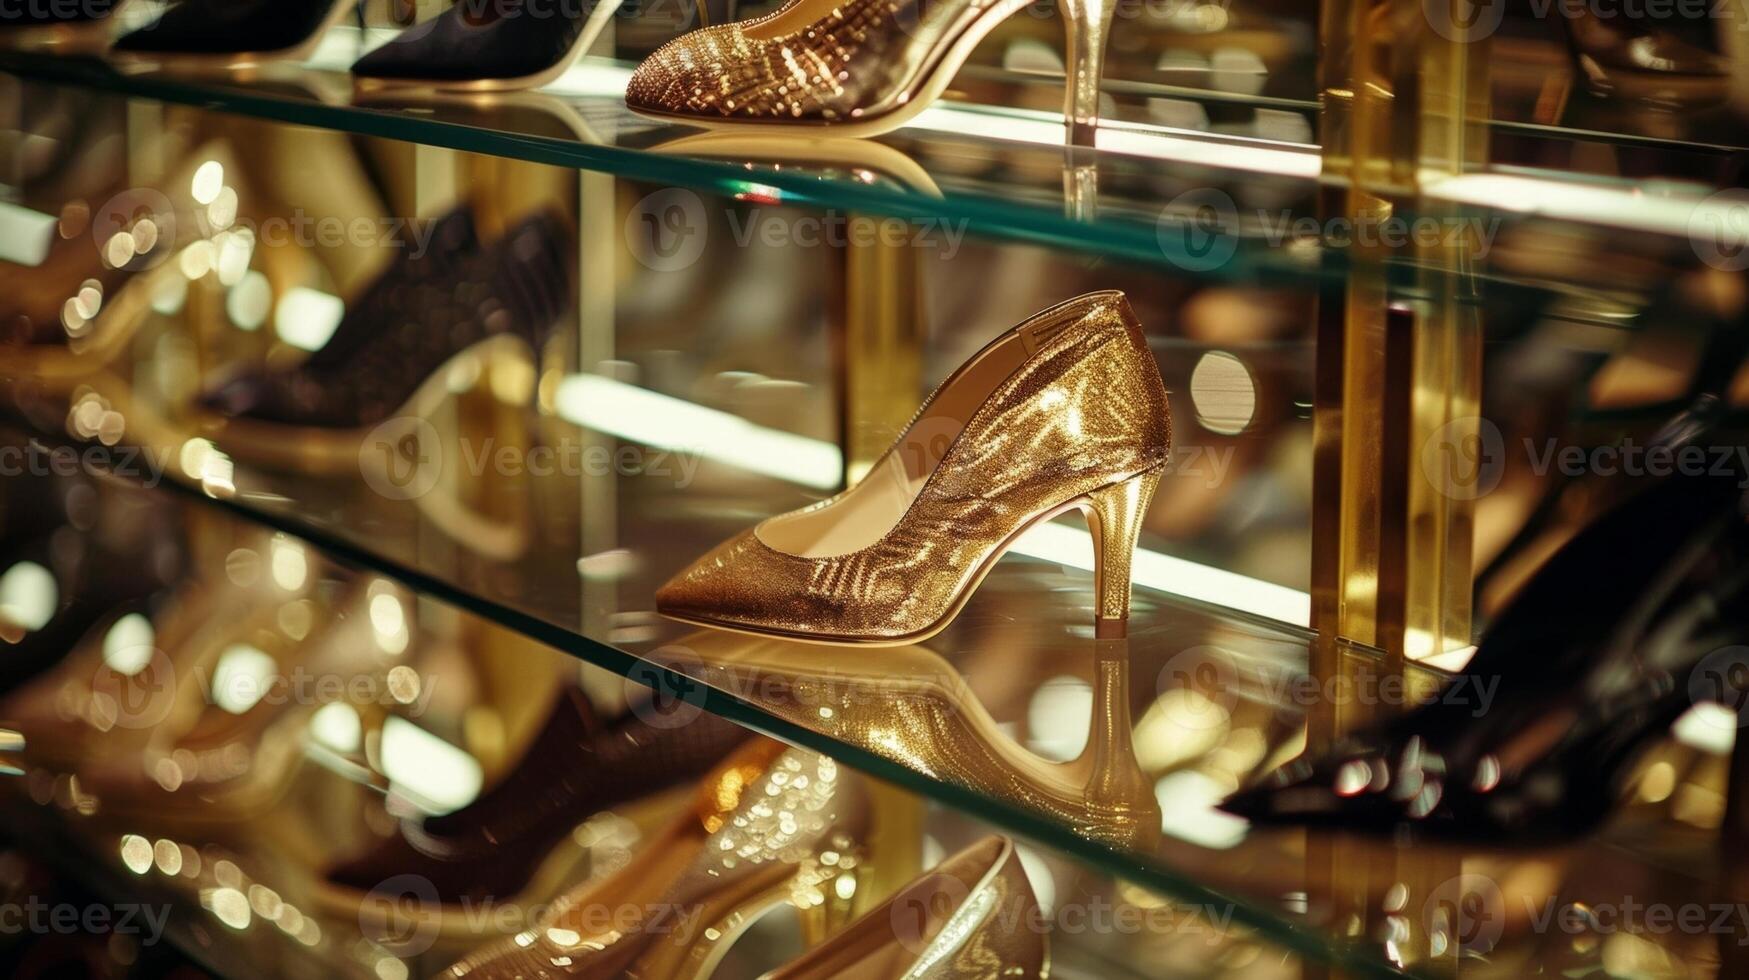 rader av elegant högklackad skor är visas på glas hyllor varje ett lysande under de ljus strålkastare foto